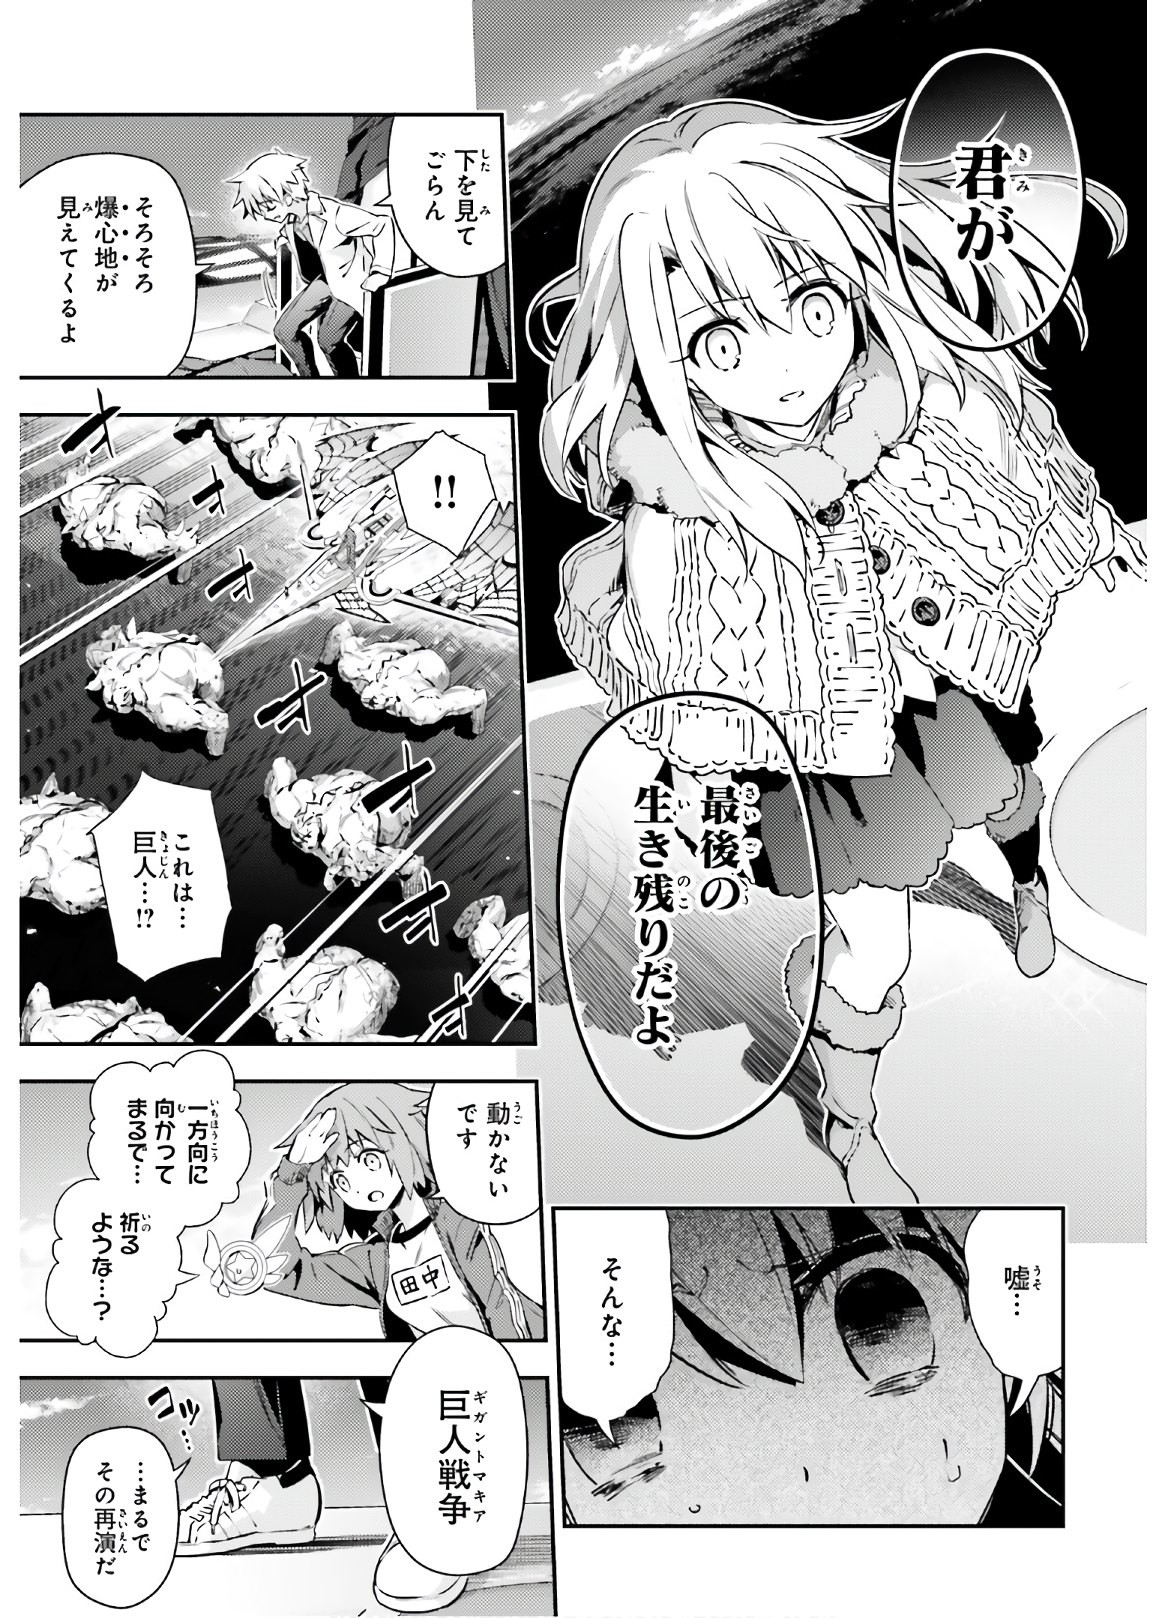 Fate/Kaleid Liner Prisma Illya Drei! - Chapter 62-1 - Page 5 / Raw | Sen  Manga